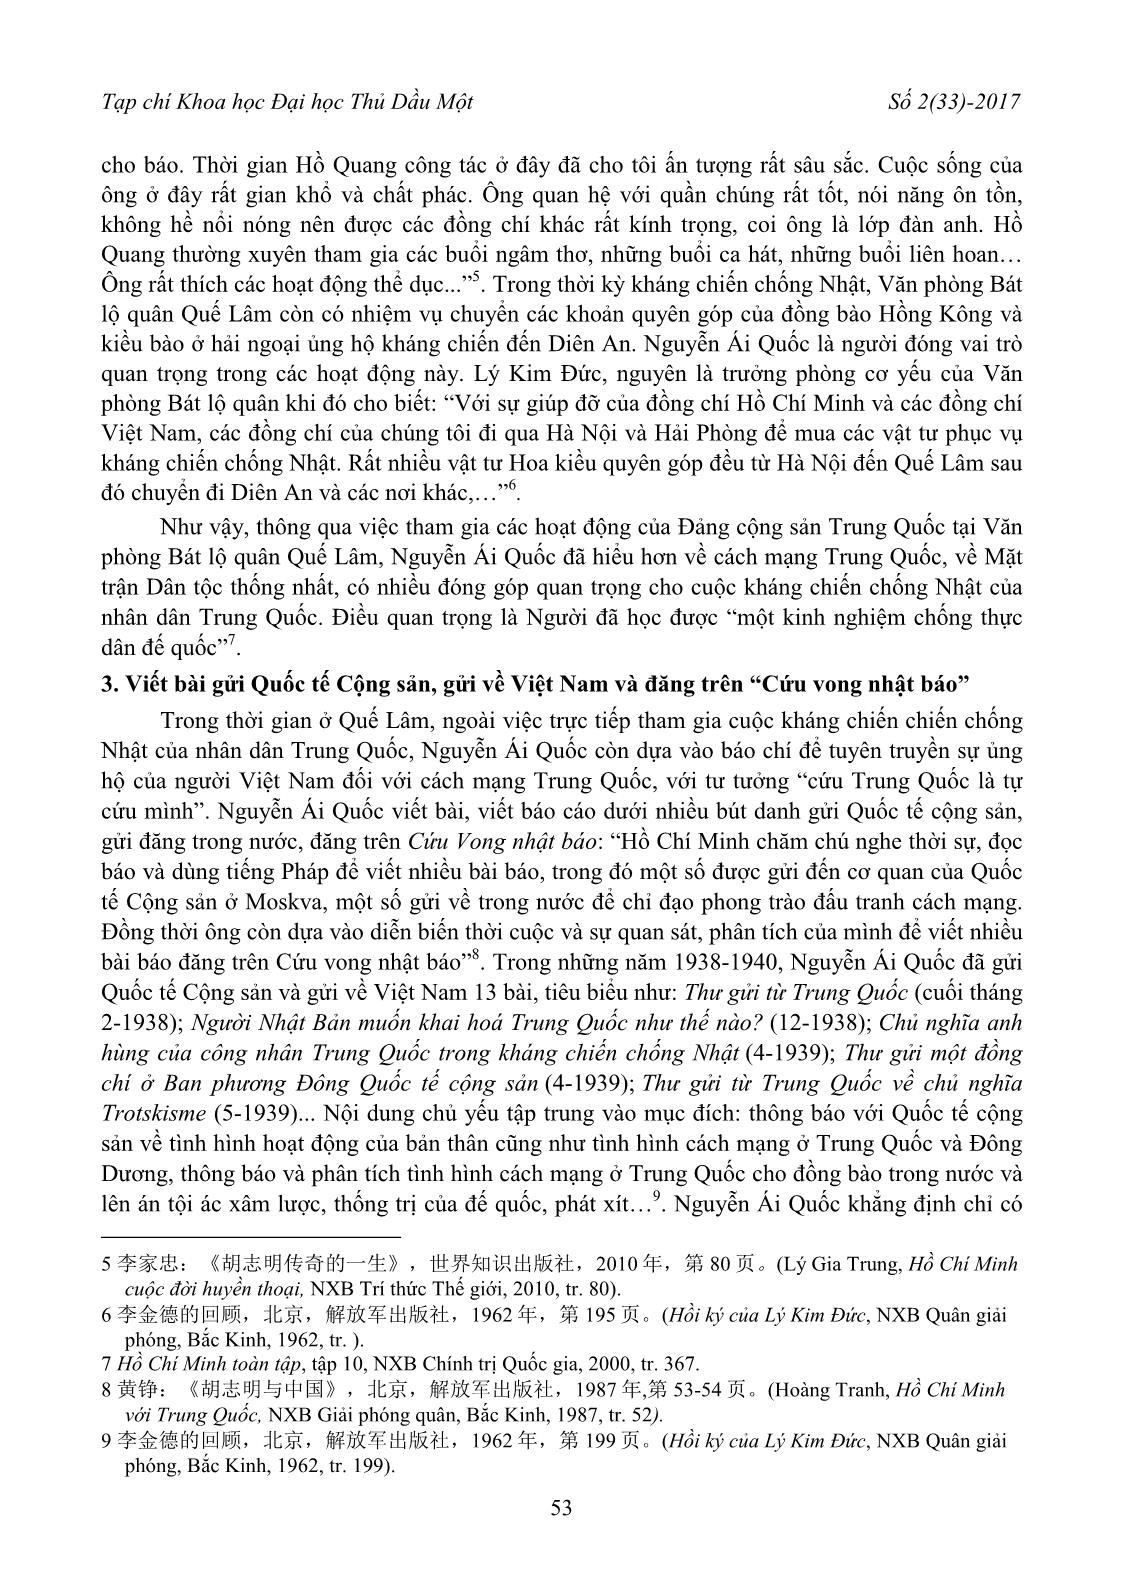 Tìm hiểu thêm về hoạt động của Nguyễn Ái Quốc ở Quế Lâm qua các tài liệu nghiên cứu của Trung Quốc trang 3